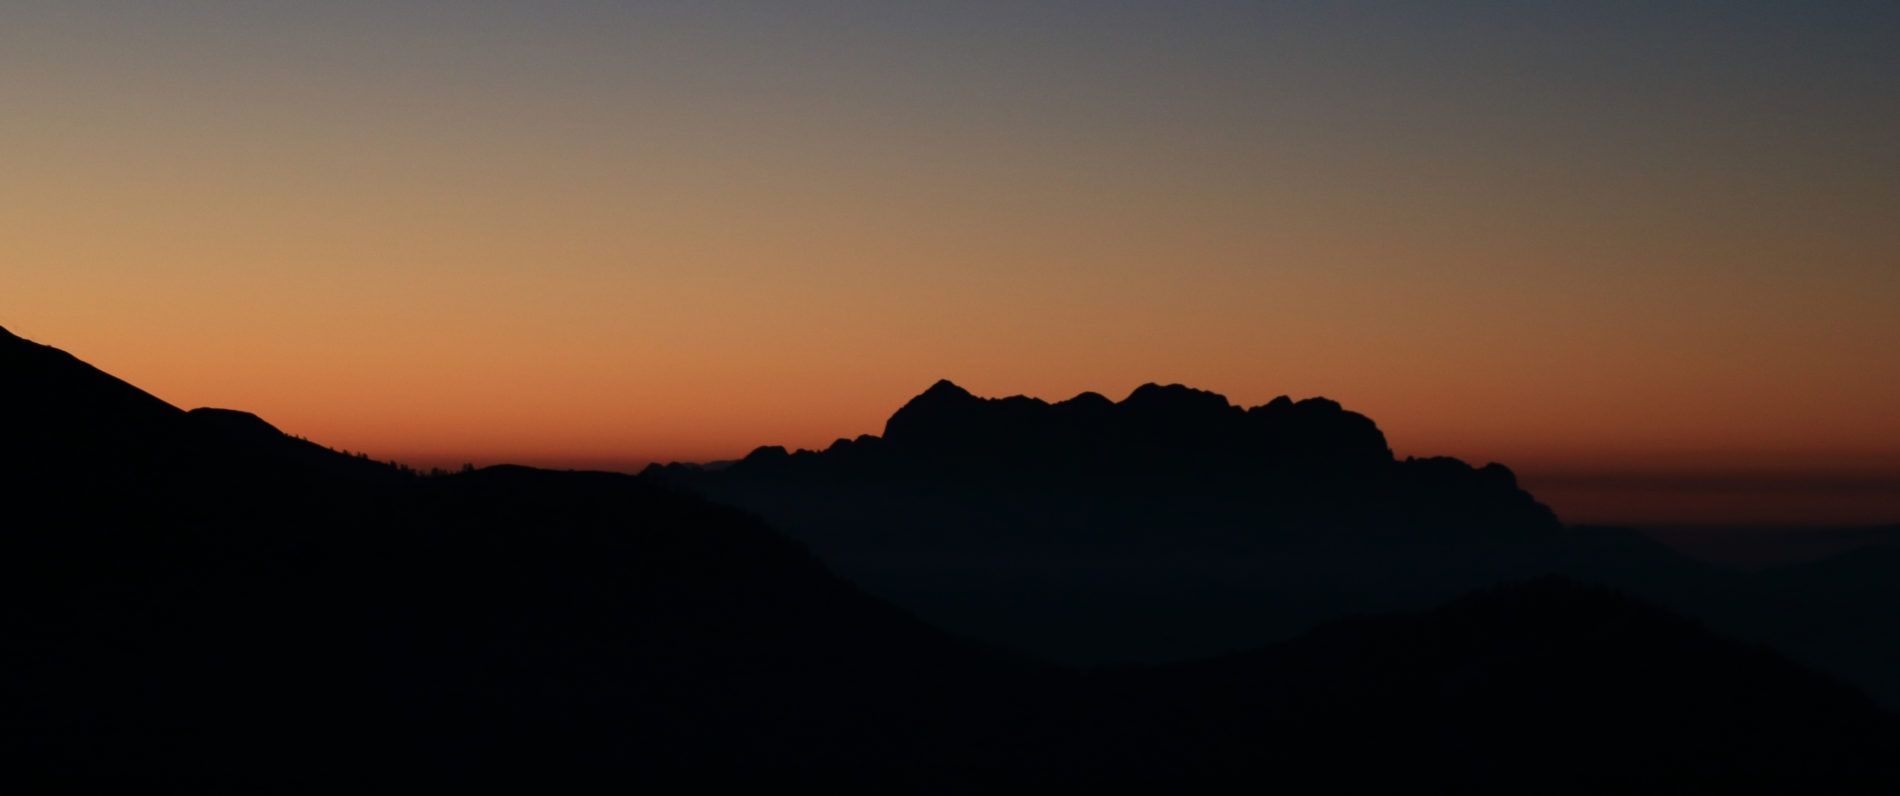 Gridone al tramonto - ph. Brunovalgrande da Flickr